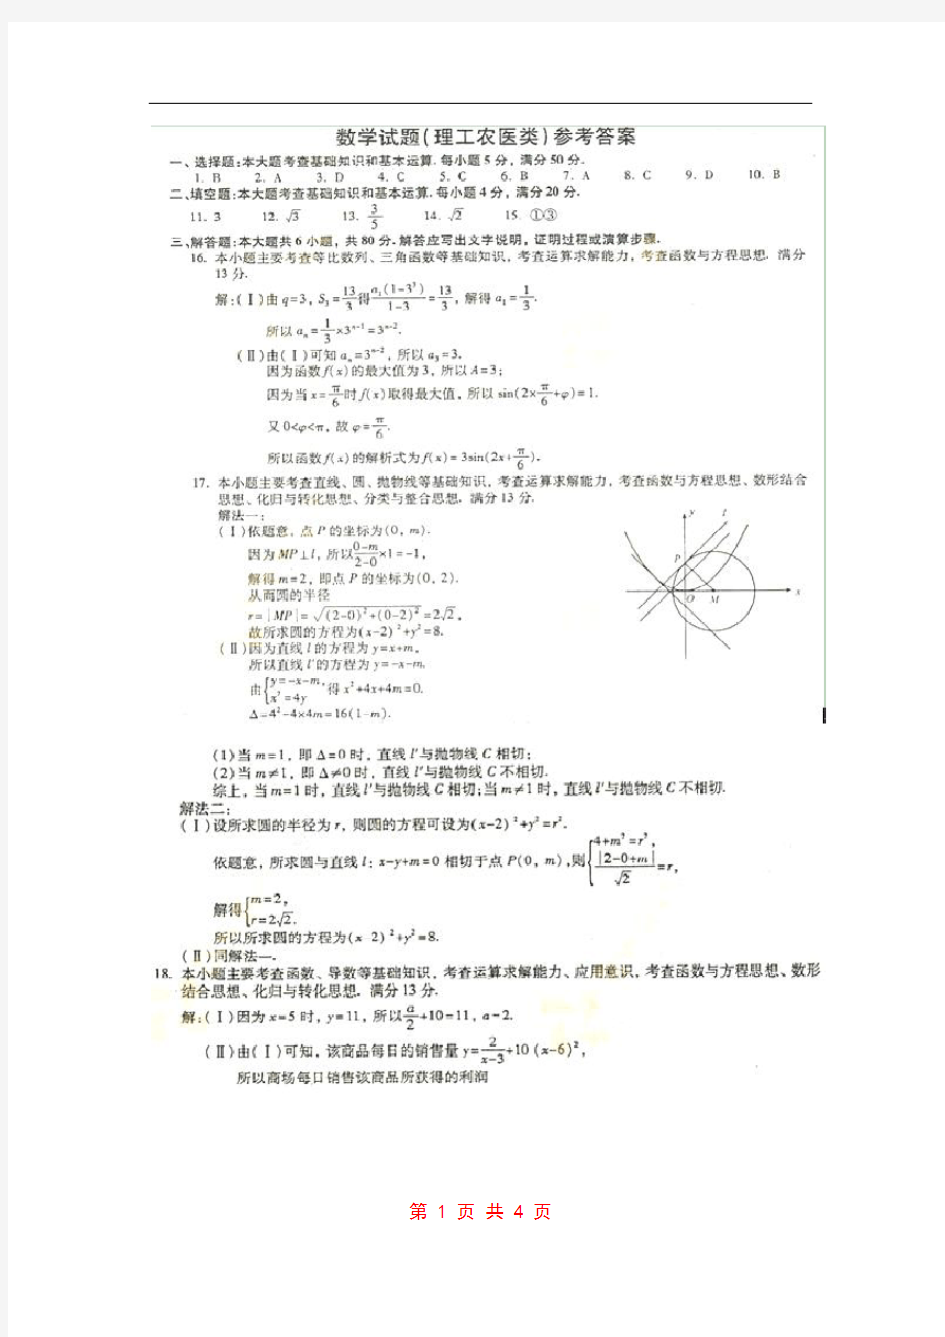 2011年高考试题(福建卷理科数学)答案